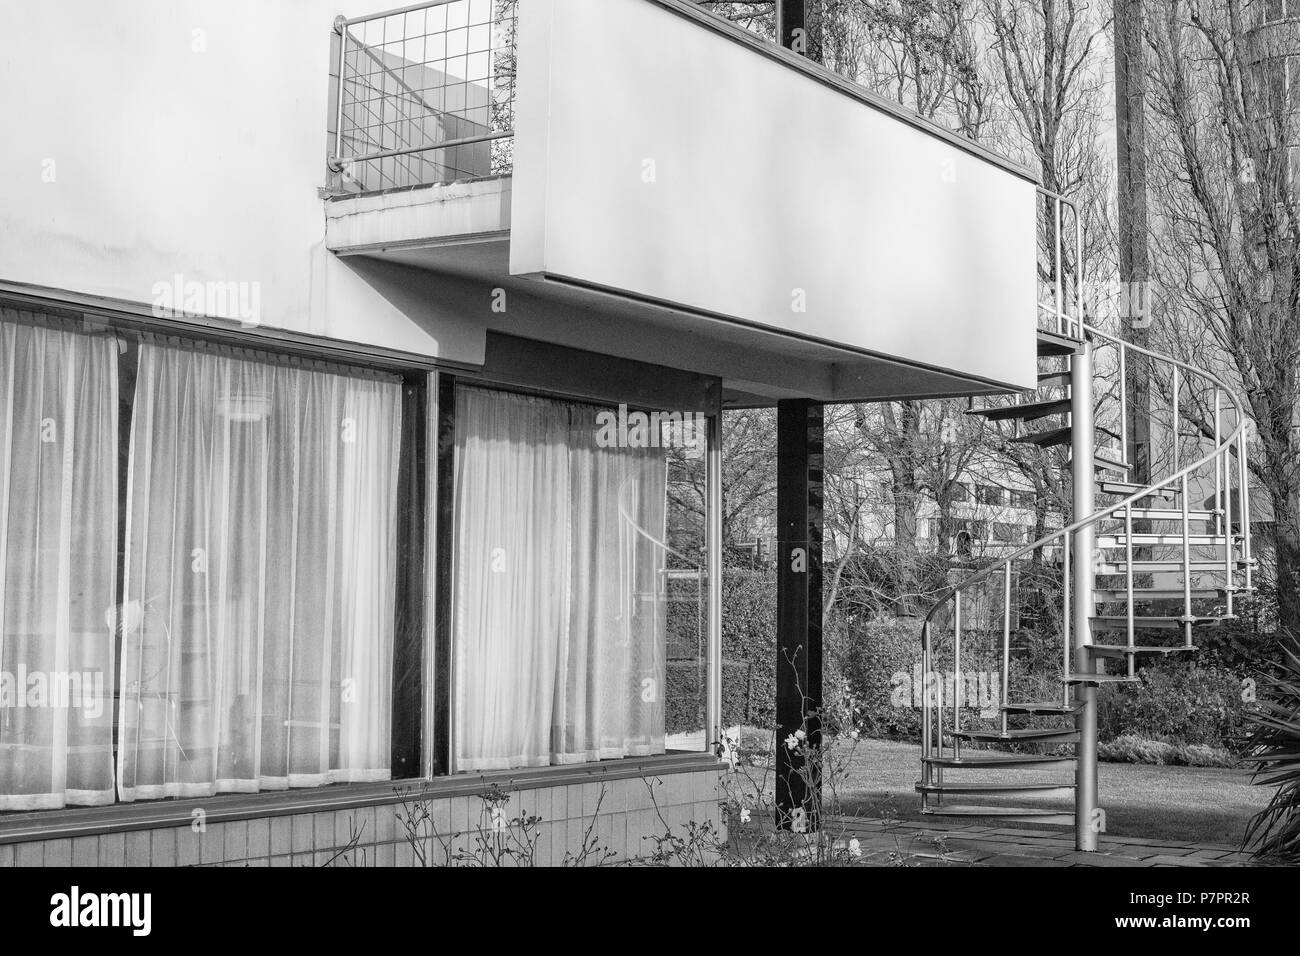 Die sonneveld House Museum in Rotterdam, Niederlande. Diese 1930er Jahre Haus wurde in der Neuen Sachlichkeit architektonischen Stil erbaut und ist heute ein Museum. In der bl Stockfoto